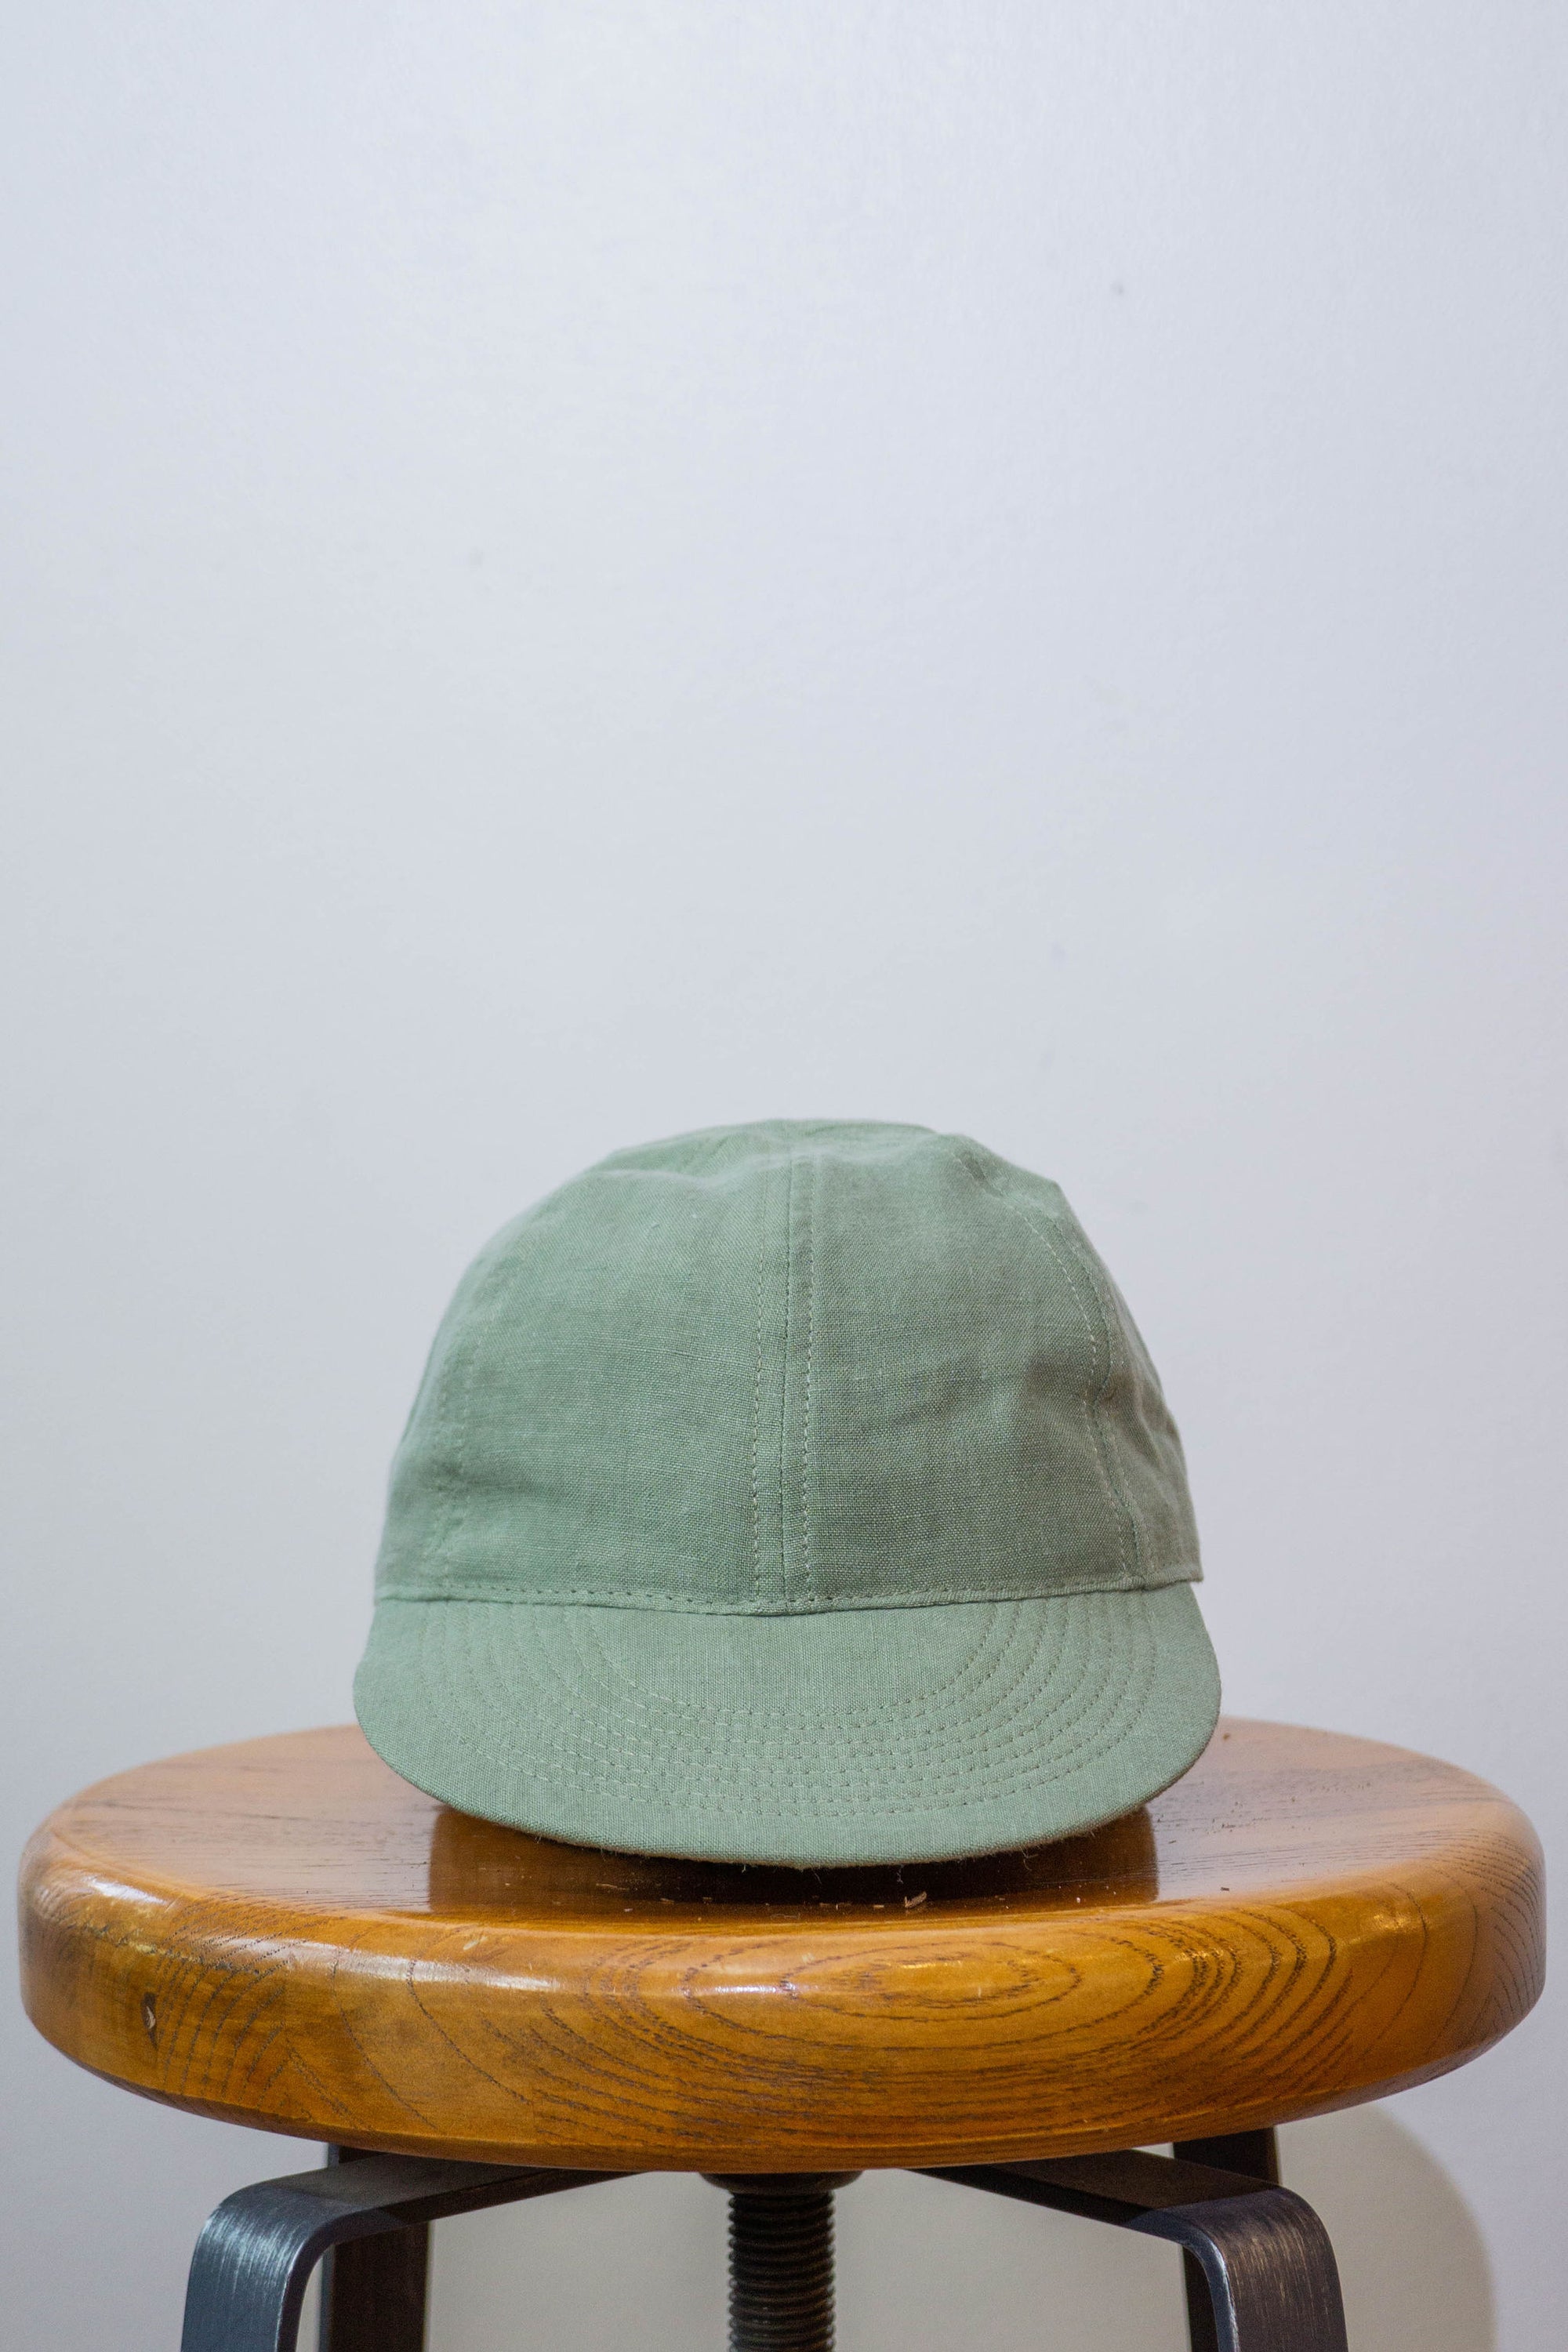 Blluemade Baseball Hat - Grass Green Belgian Linen